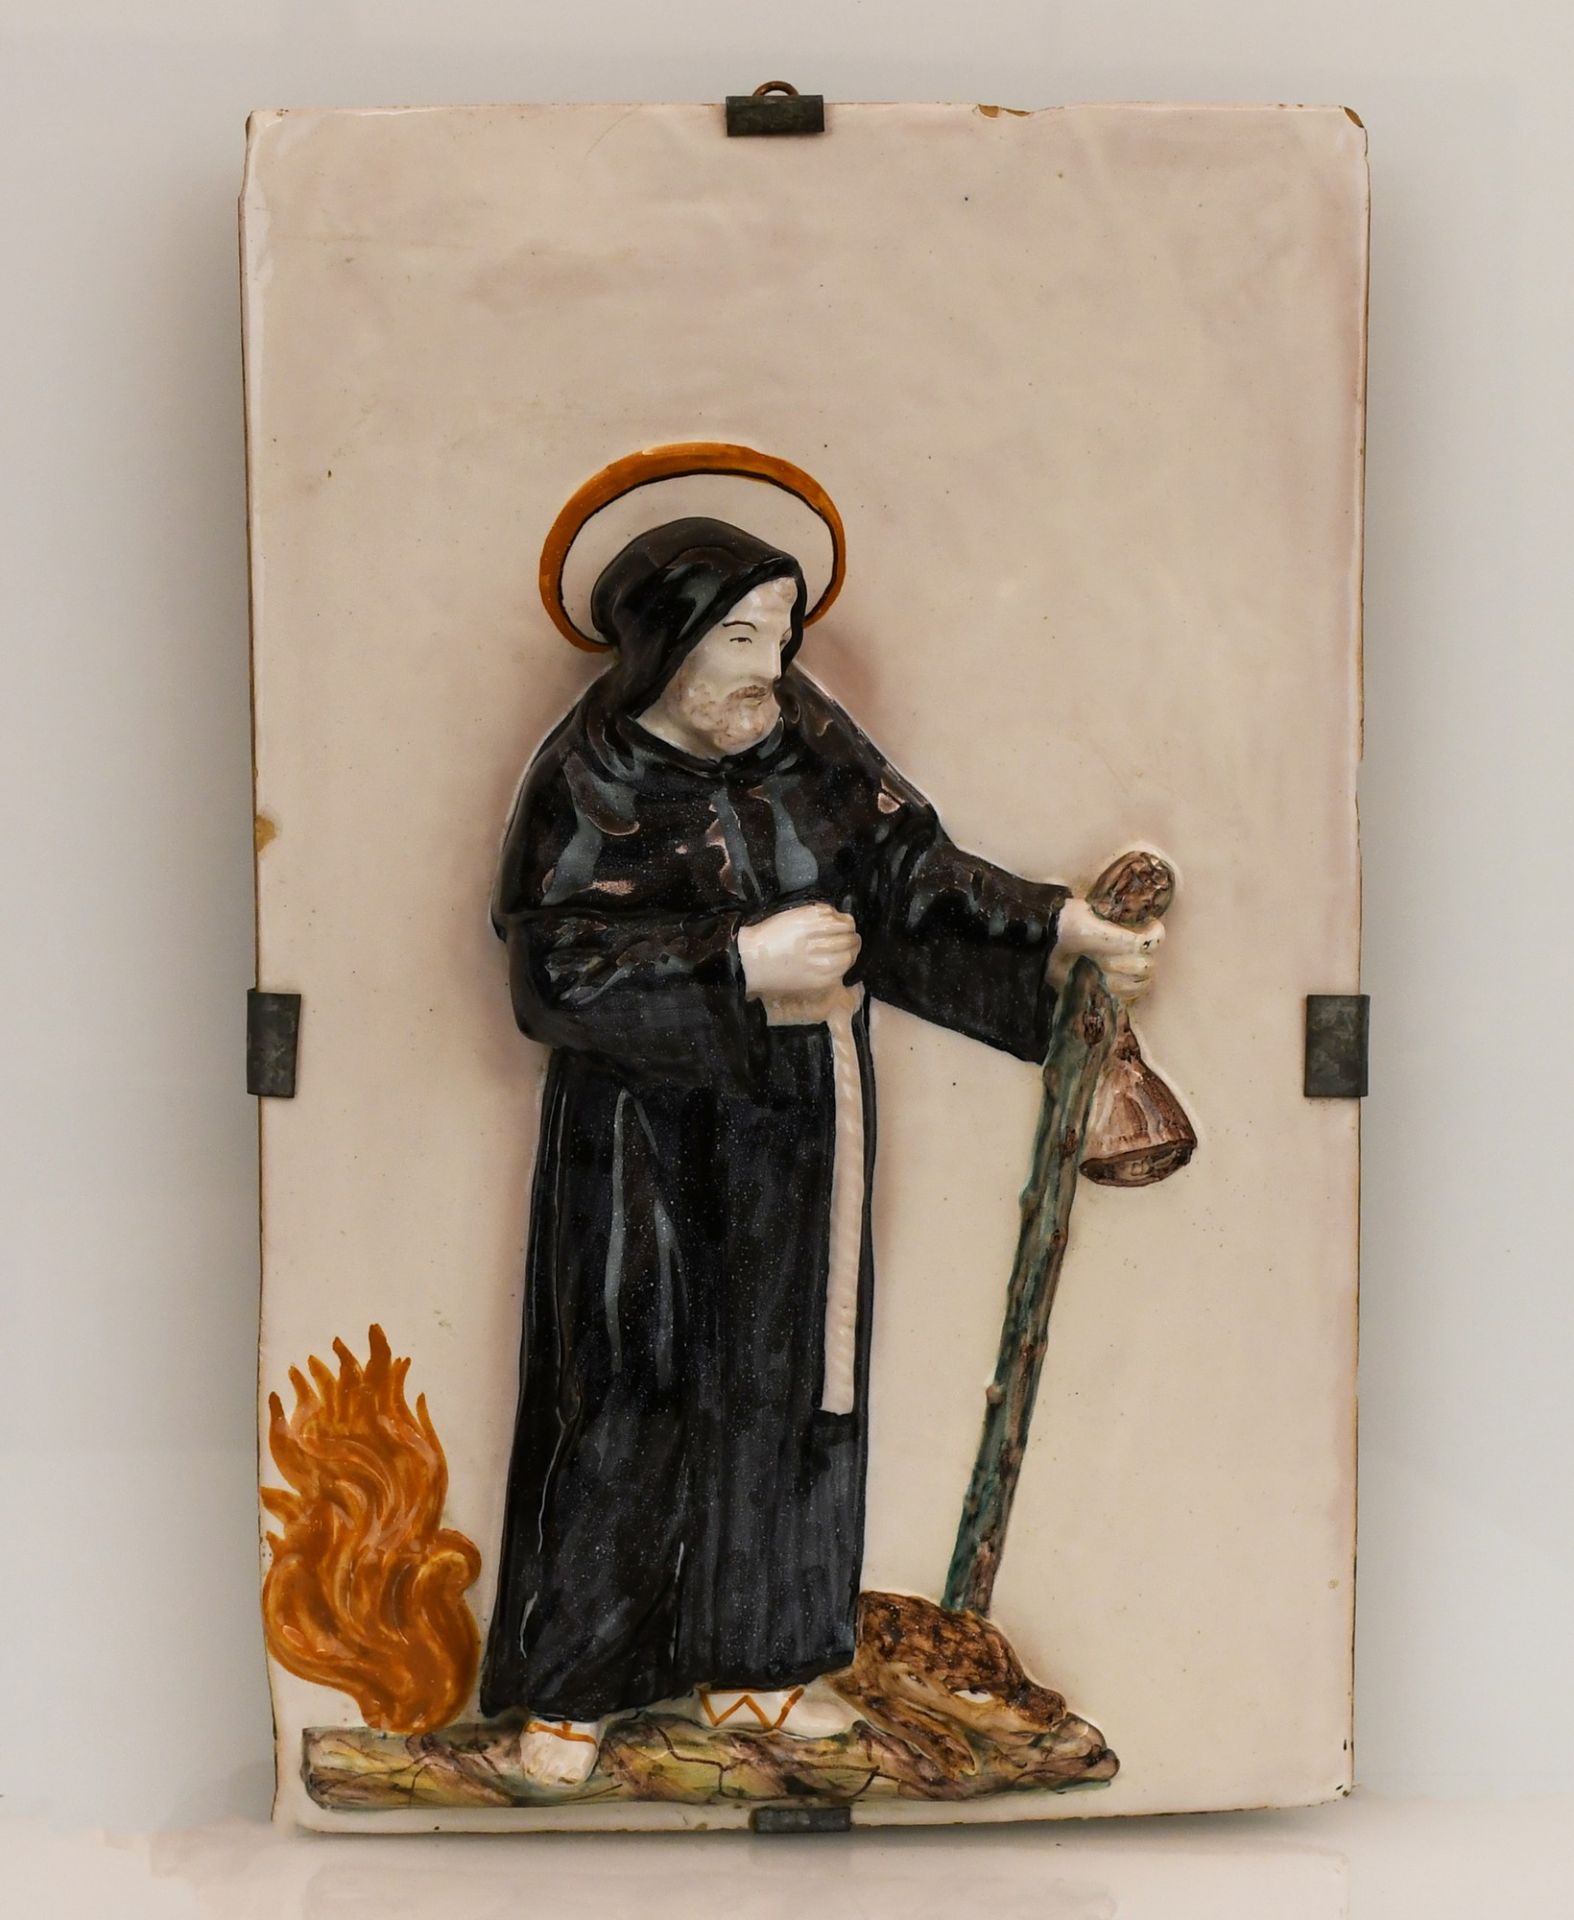 Mattonella a rilievo con Sant'Antonio Abate riconoscibile dagli attributi del maiale, del fuoco e de